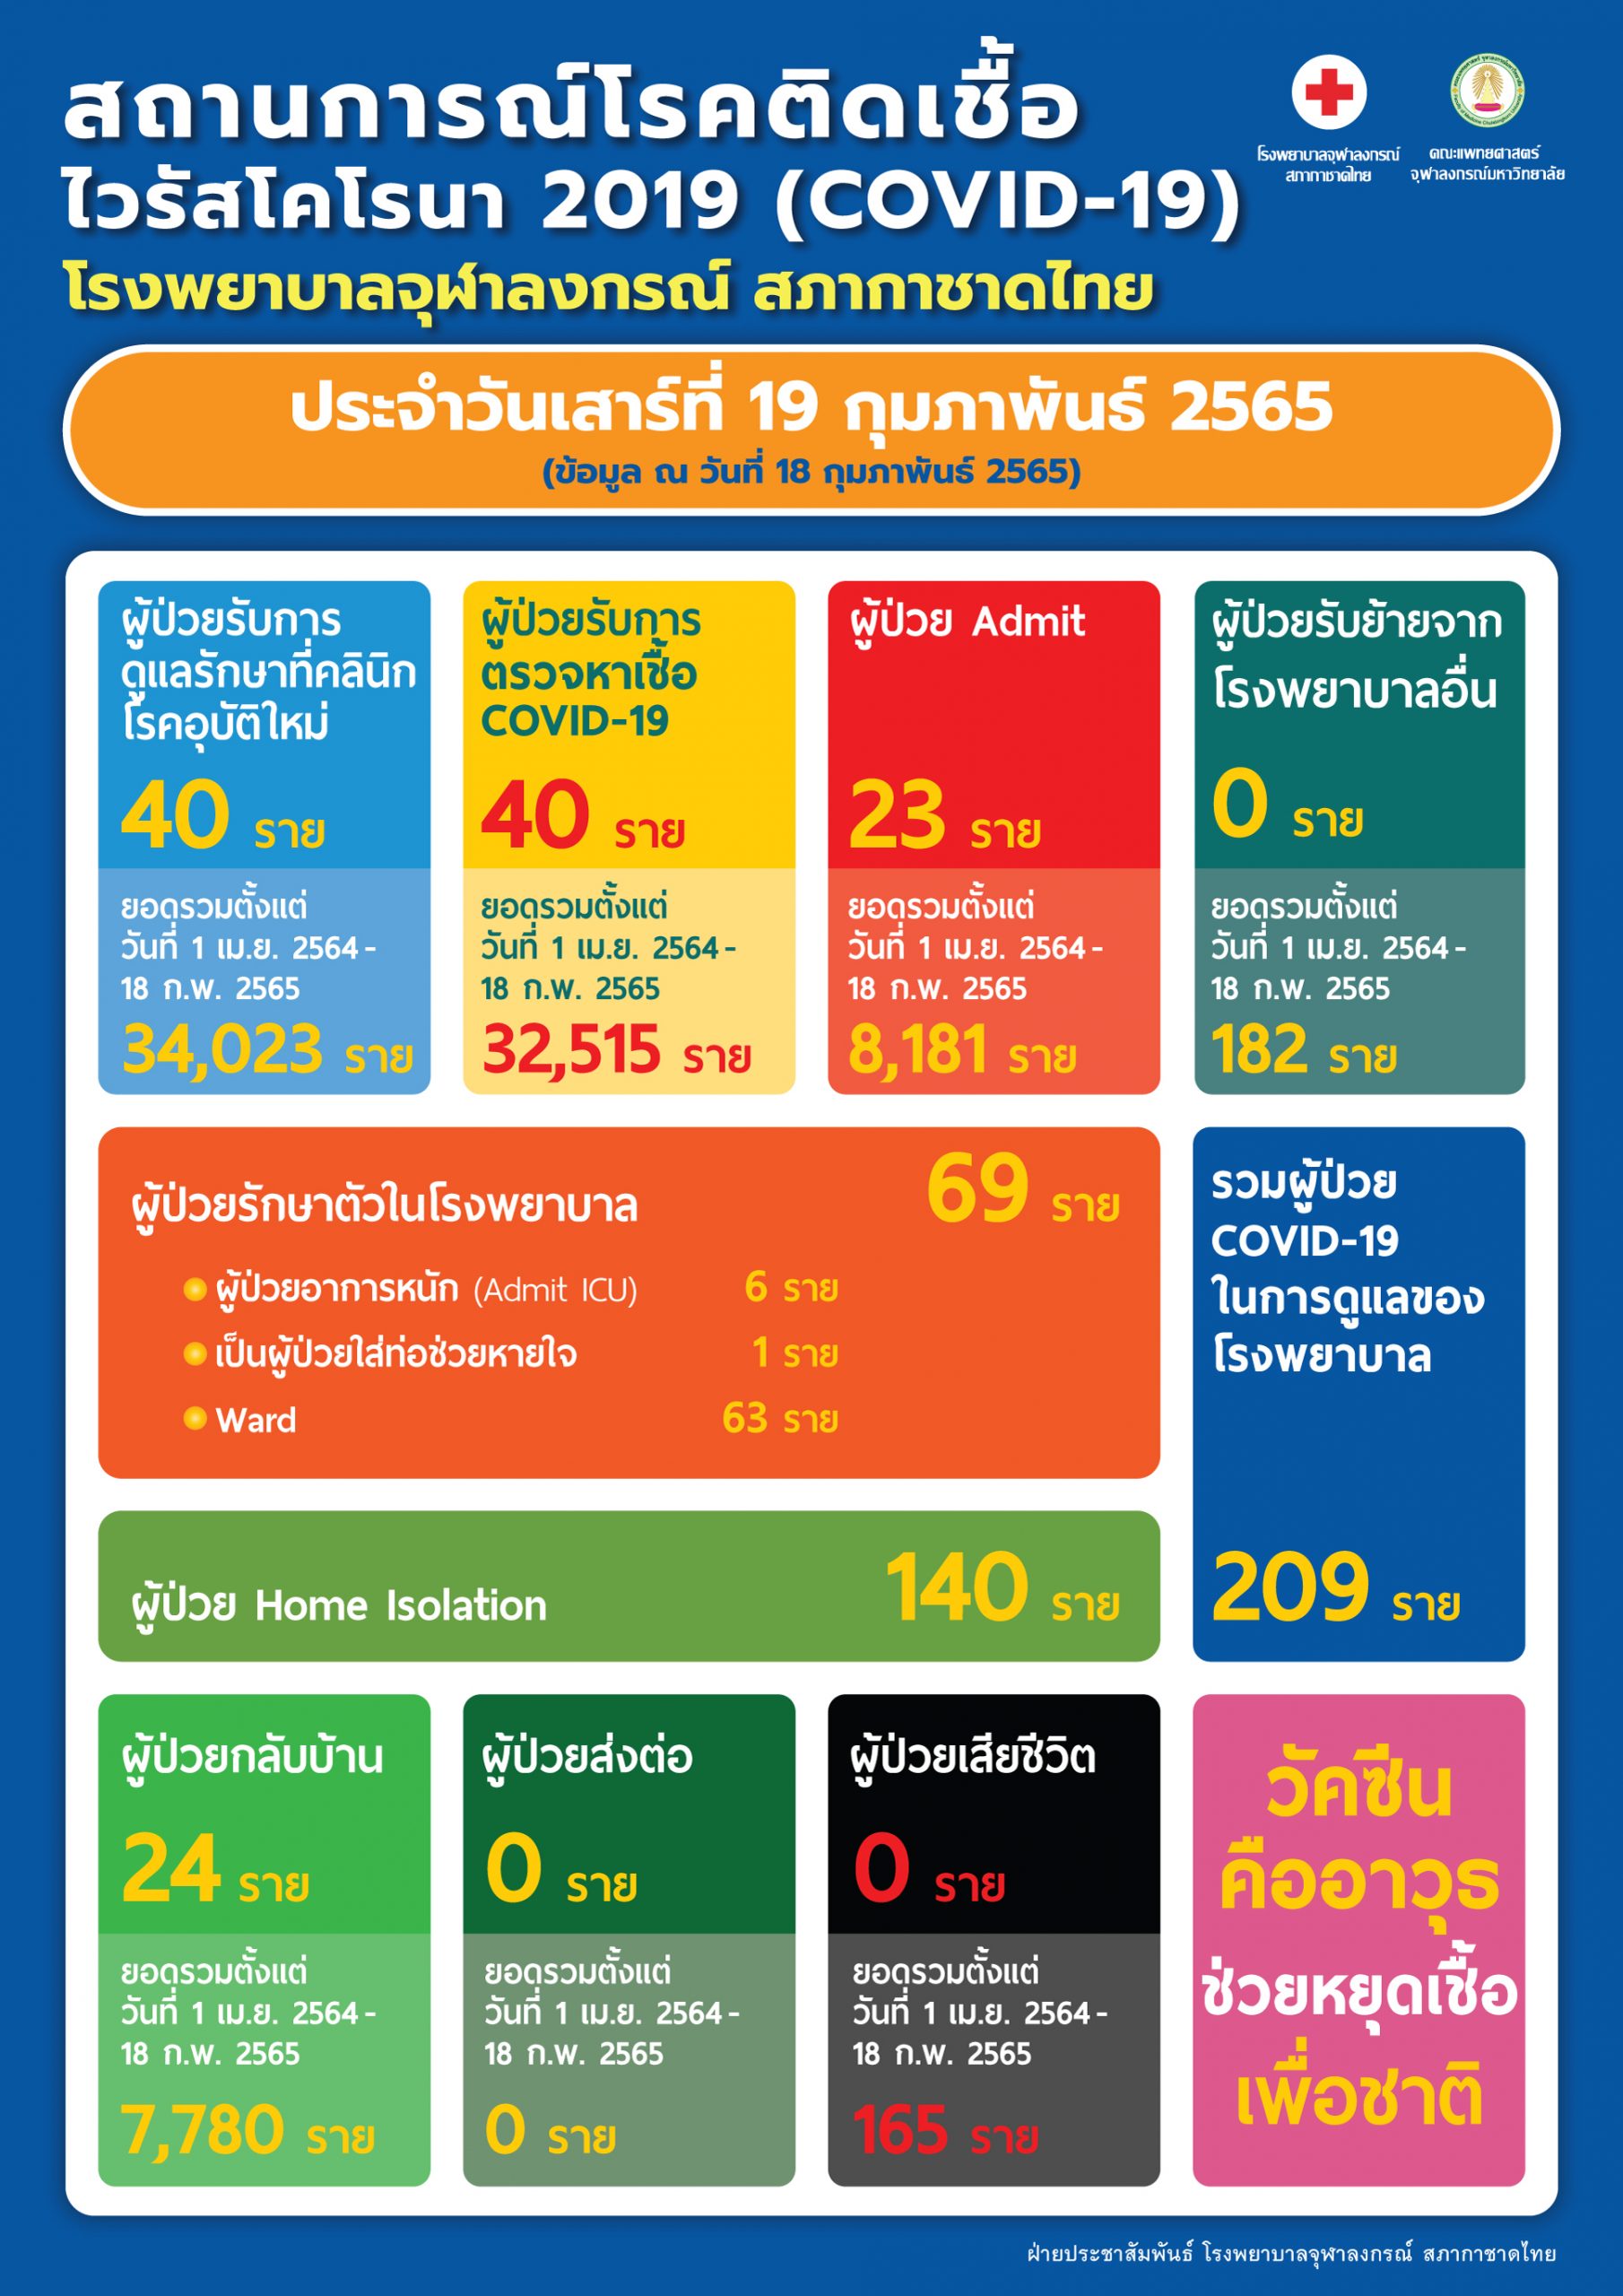 สถานการณ์โรคติดเชื้อไวรัสโคโรนา 2019 (COVID-19) โรงพยาบาลจุฬาลงกรณ์ สภากาชาดไทย ประจำวันเสาร์ที่ 19 กุมภาพันธ์ 2565